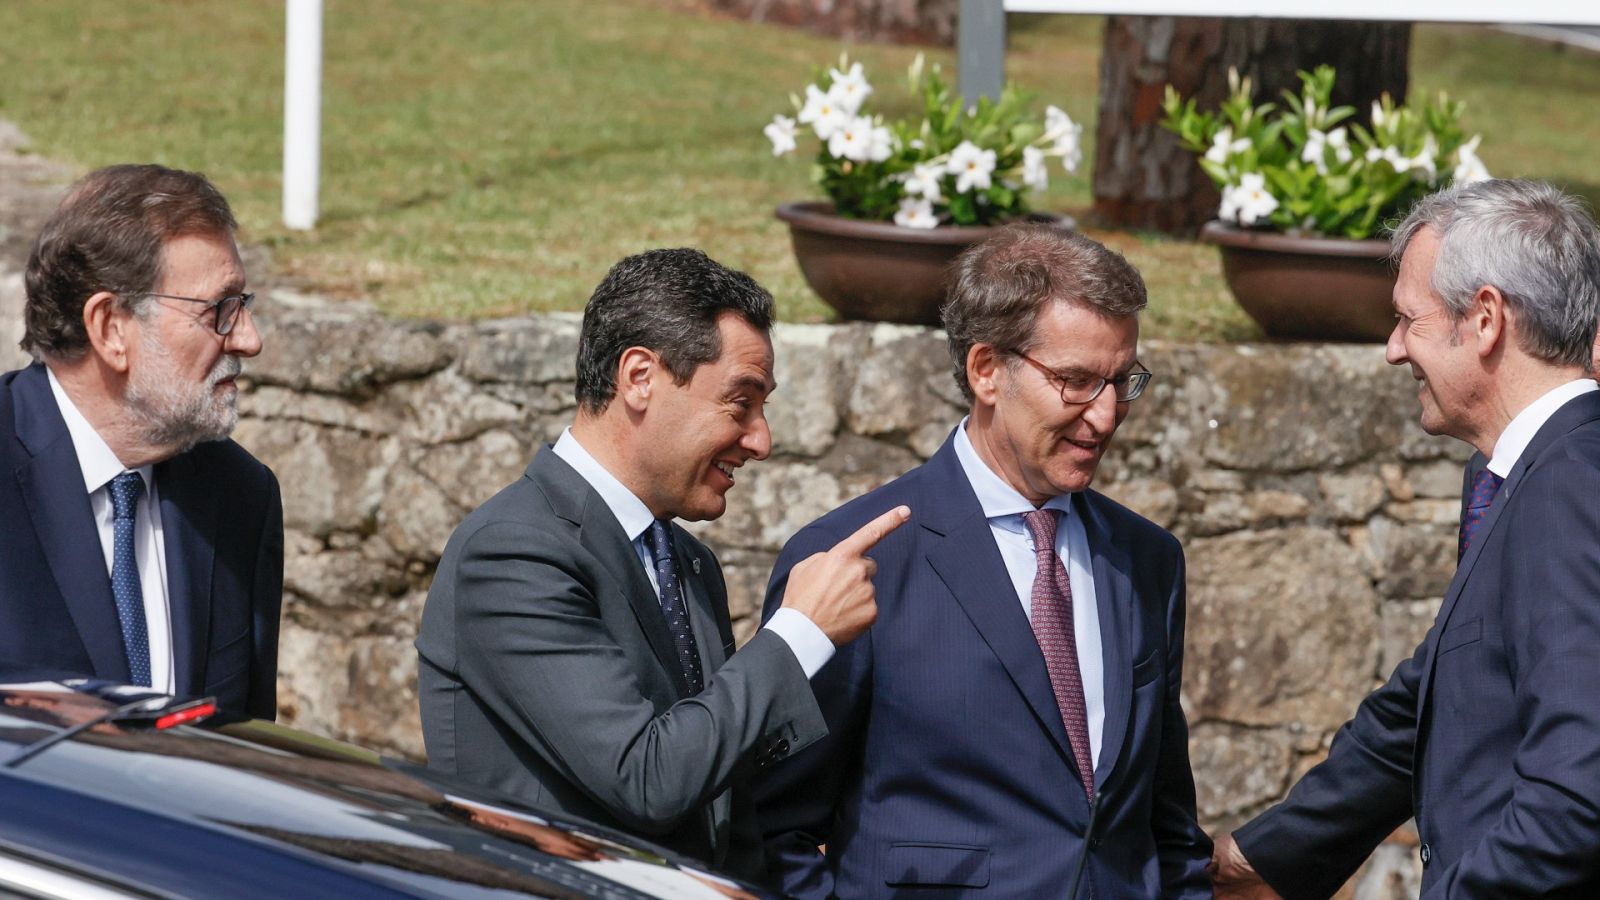 Feijóo, Rajoy y Moreno unen sus voces contra la reforma fiscal del Gobierno